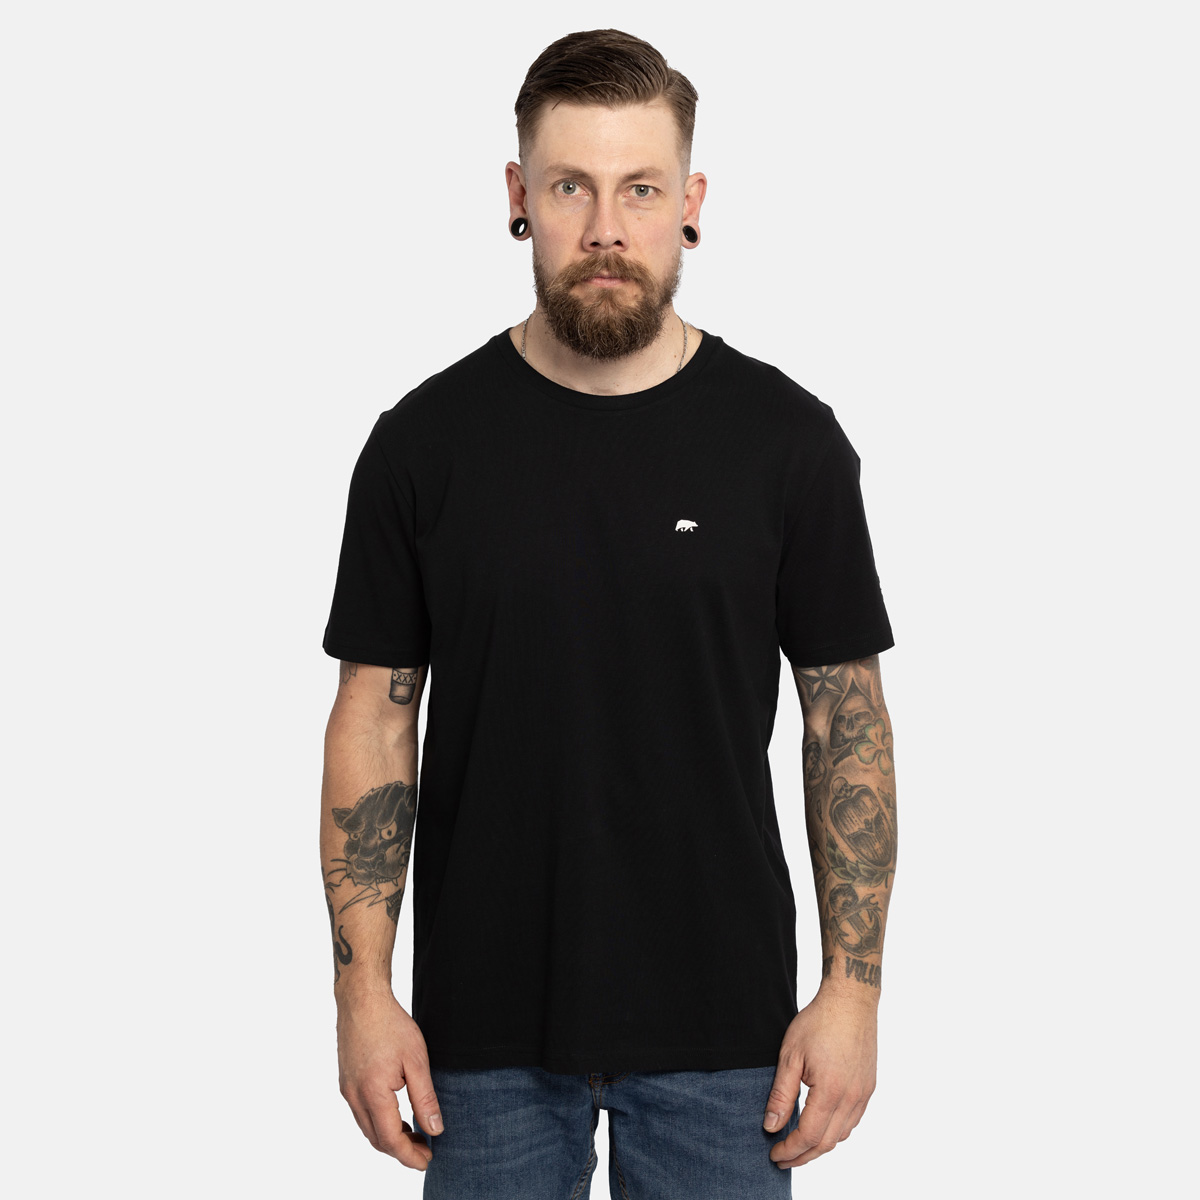 FORSBERG T-Shirt mit kleinem Gummi-Patch - 1